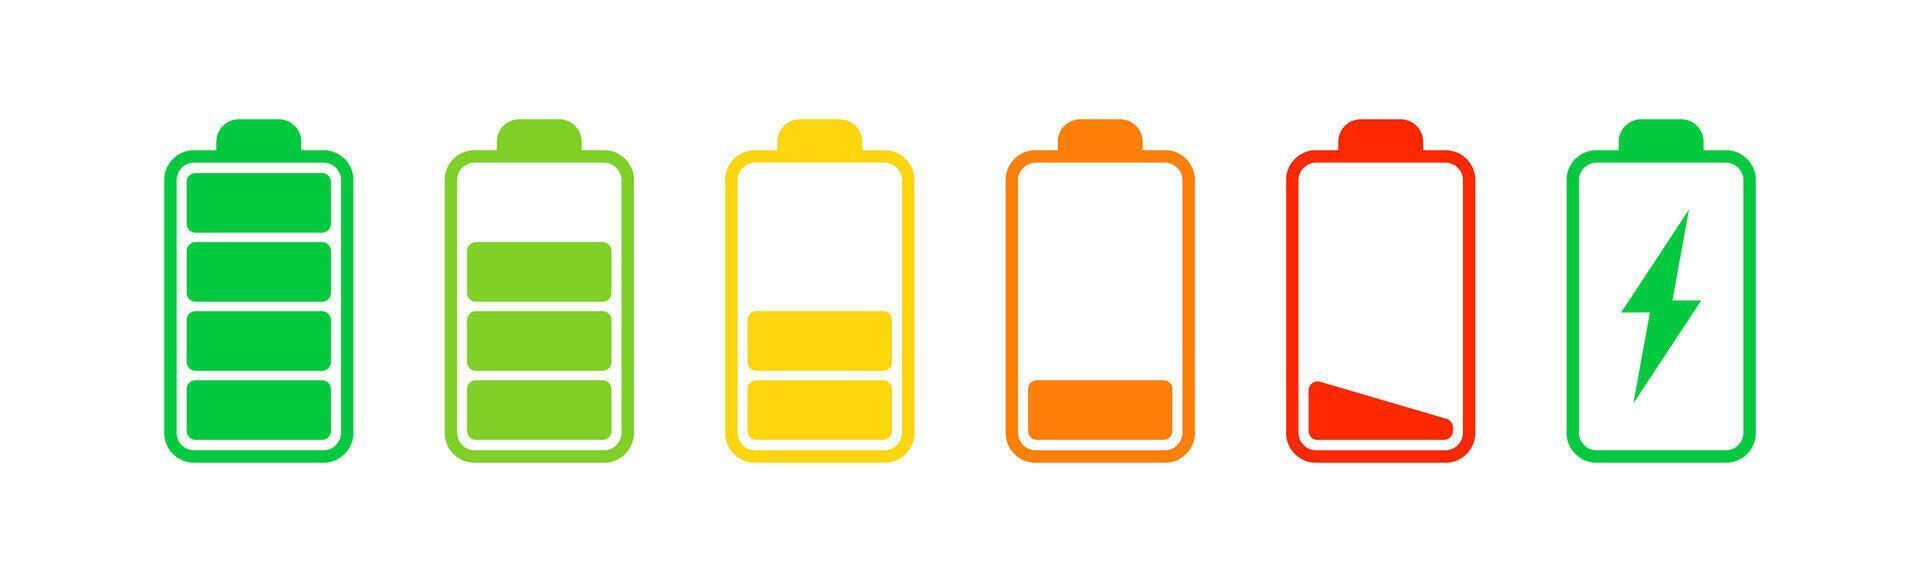 Batterie Symbol. aufladen Energie unterzeichnen. voll Elektrizität Leistung. Akkumulator Niveau Bar. Vektor Illustration.